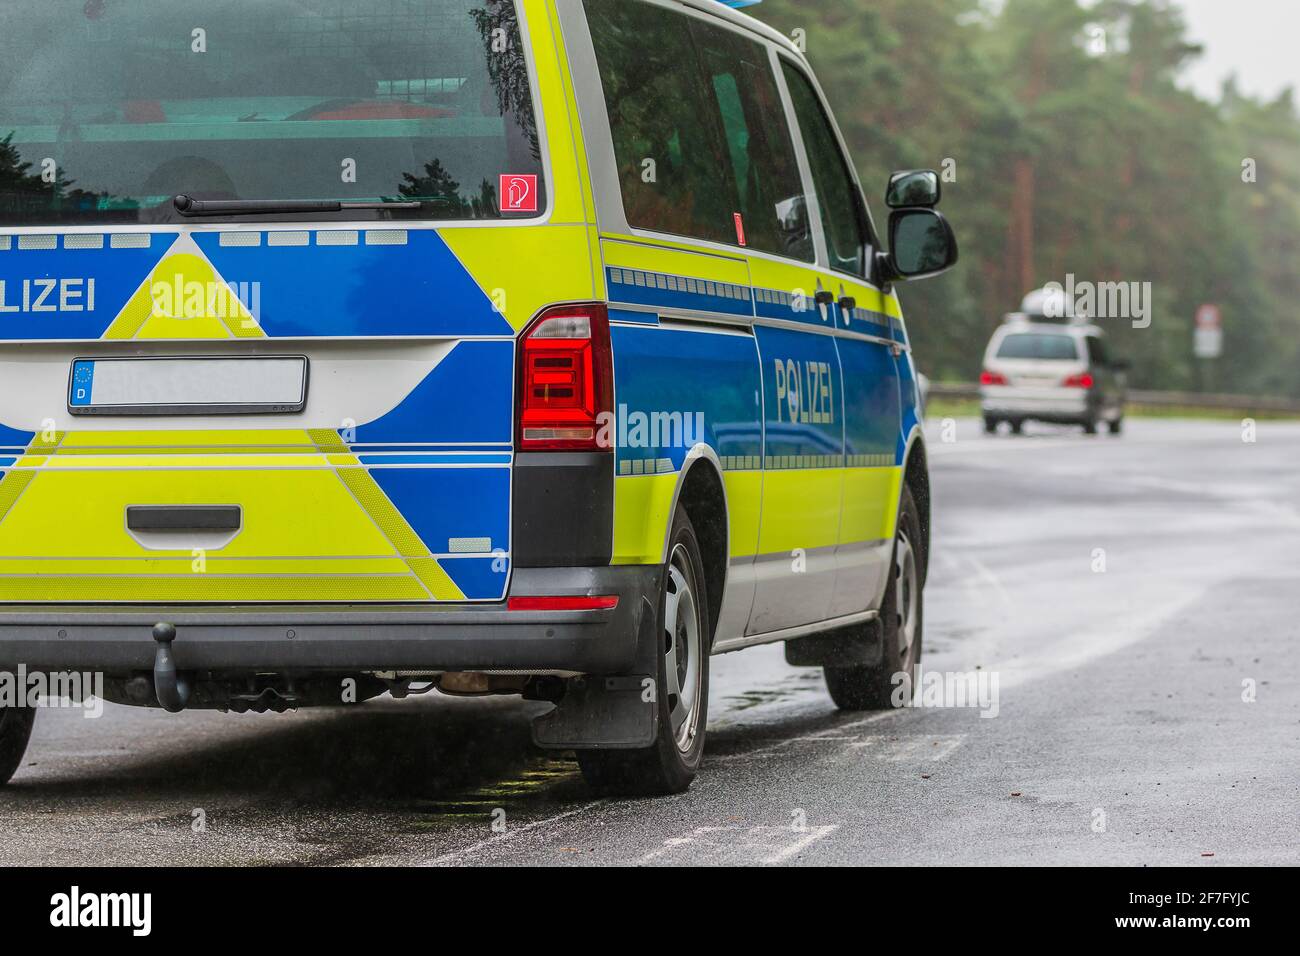 Vue partielle d'une voiture de police allemande sur l'autoroute par temps pluvieux. Côté passager du véhicule avec le lettrage police sur la carrosserie en bleu Banque D'Images